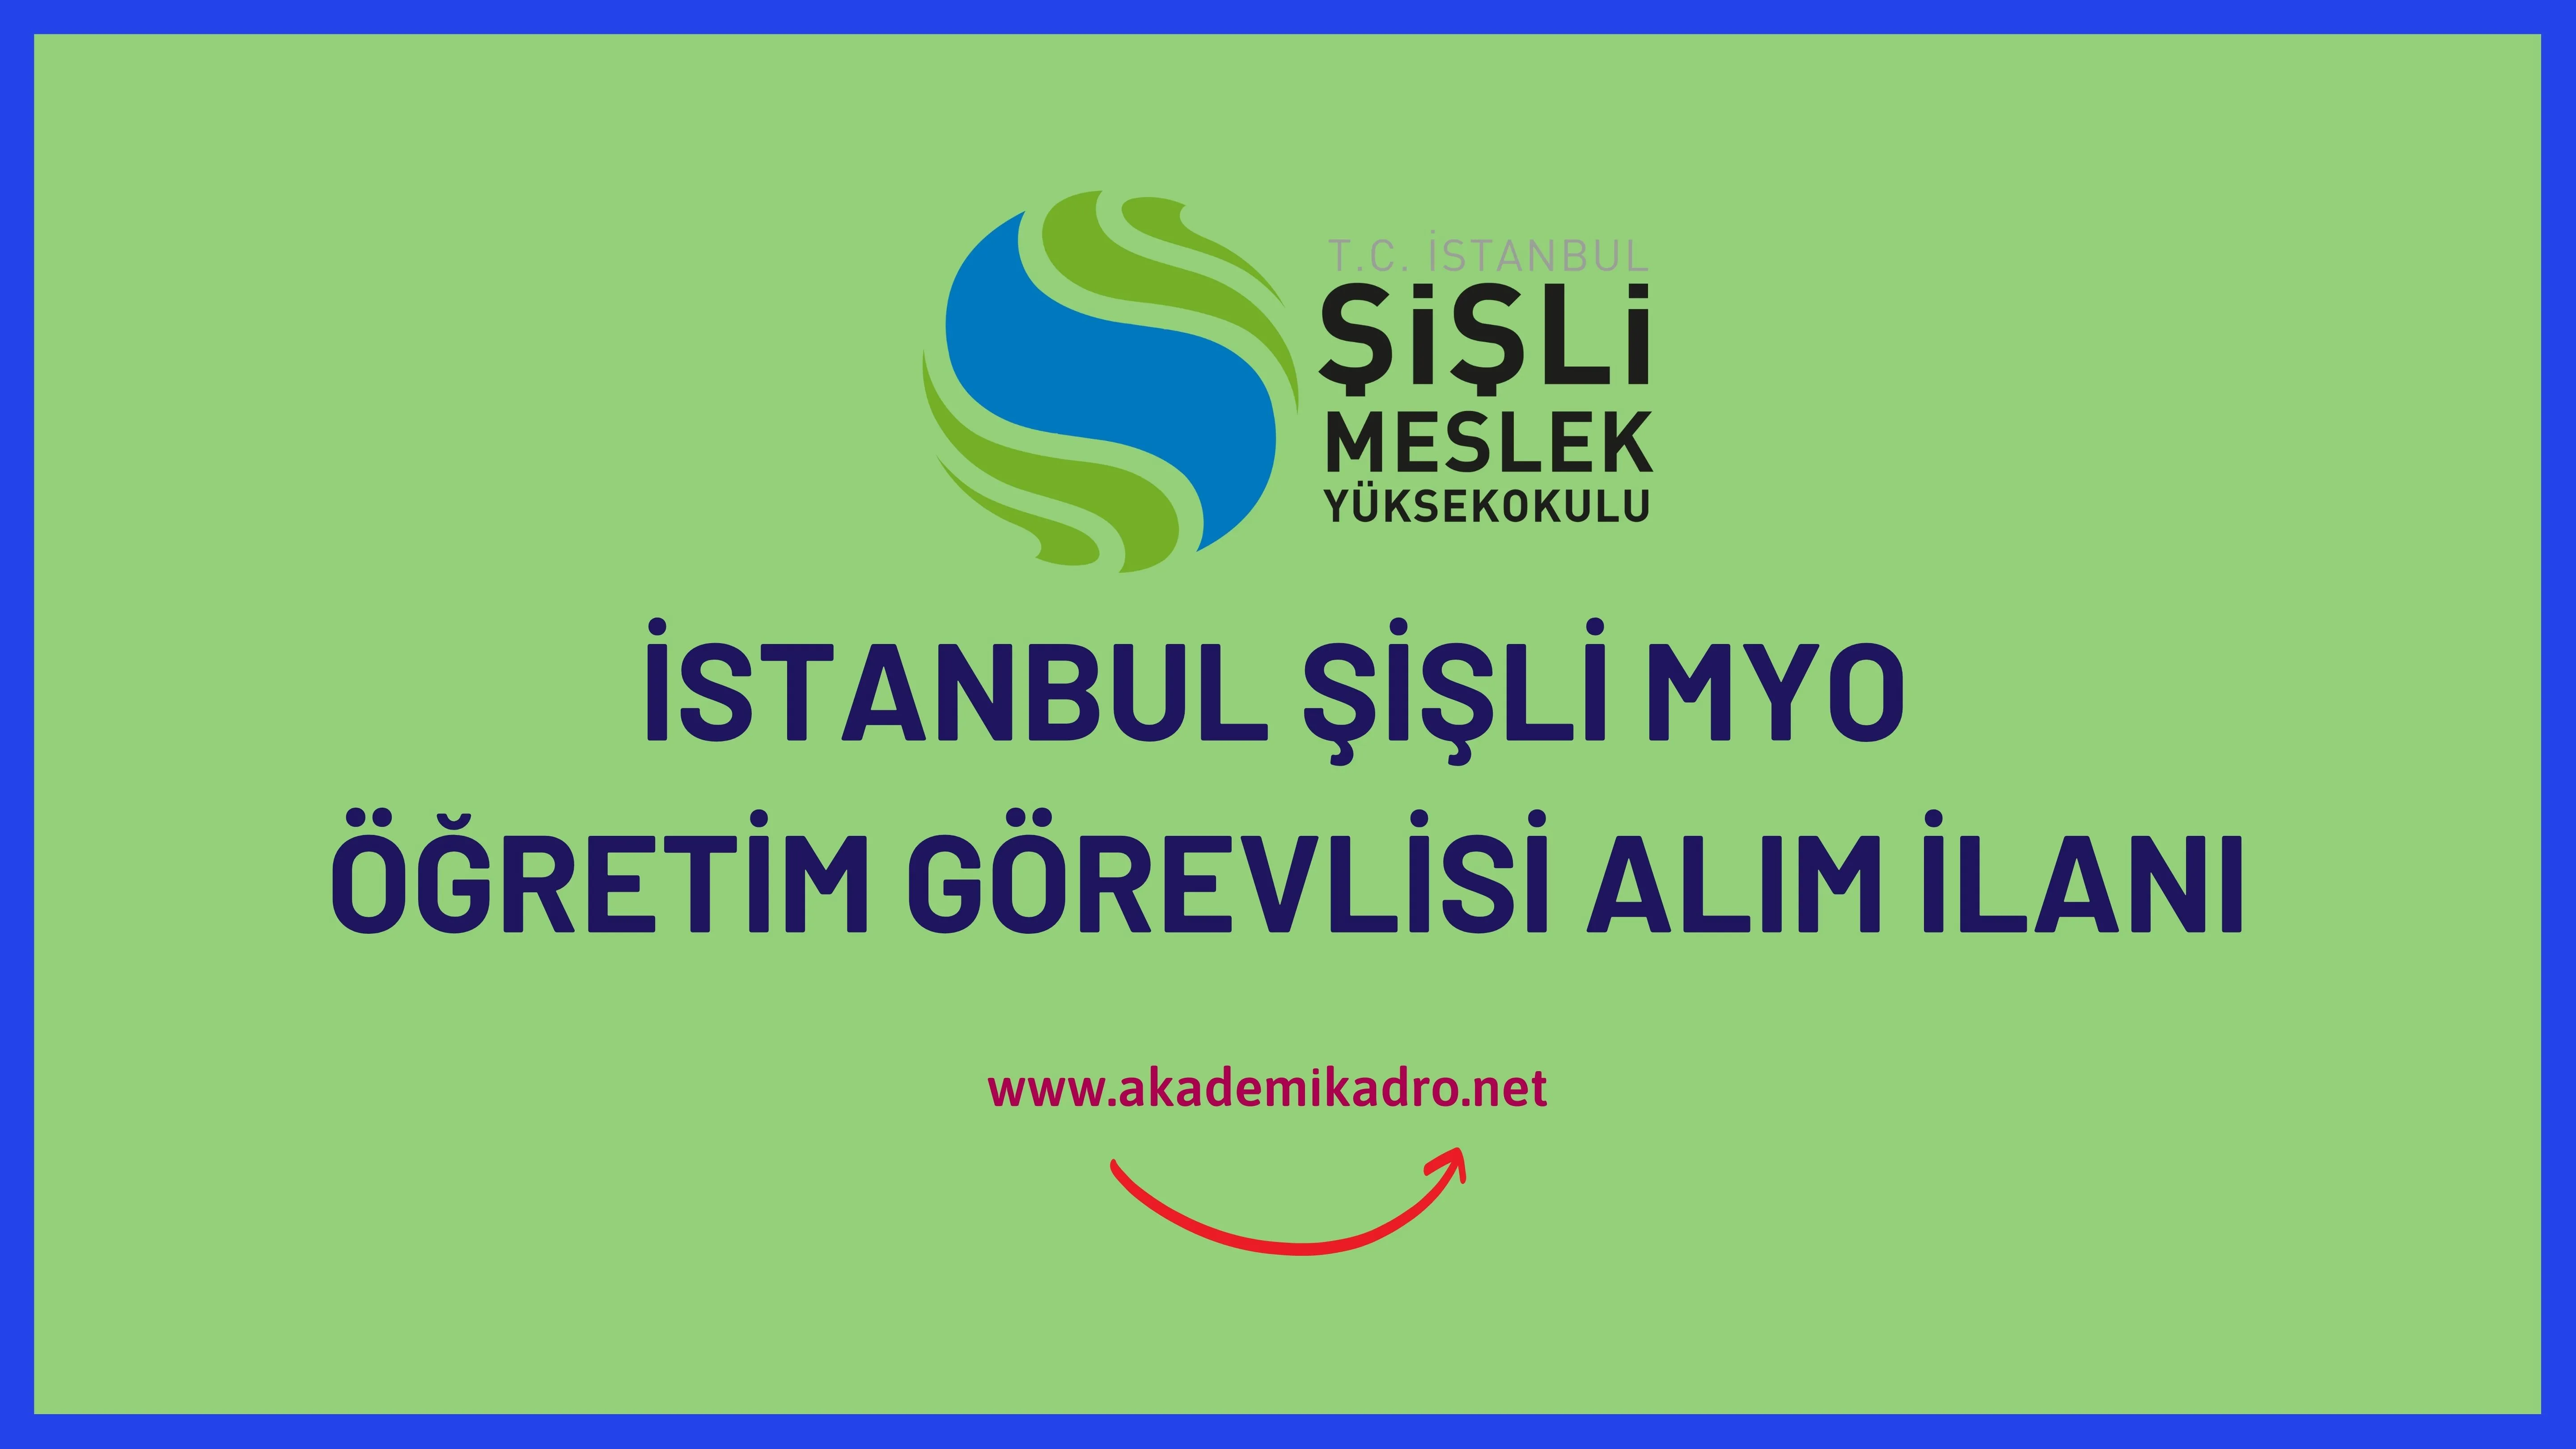 İstanbul Şişli Meslek Yüksekokulu çeşitli branşlarda 11 Öğretim Görevlisi alacak.